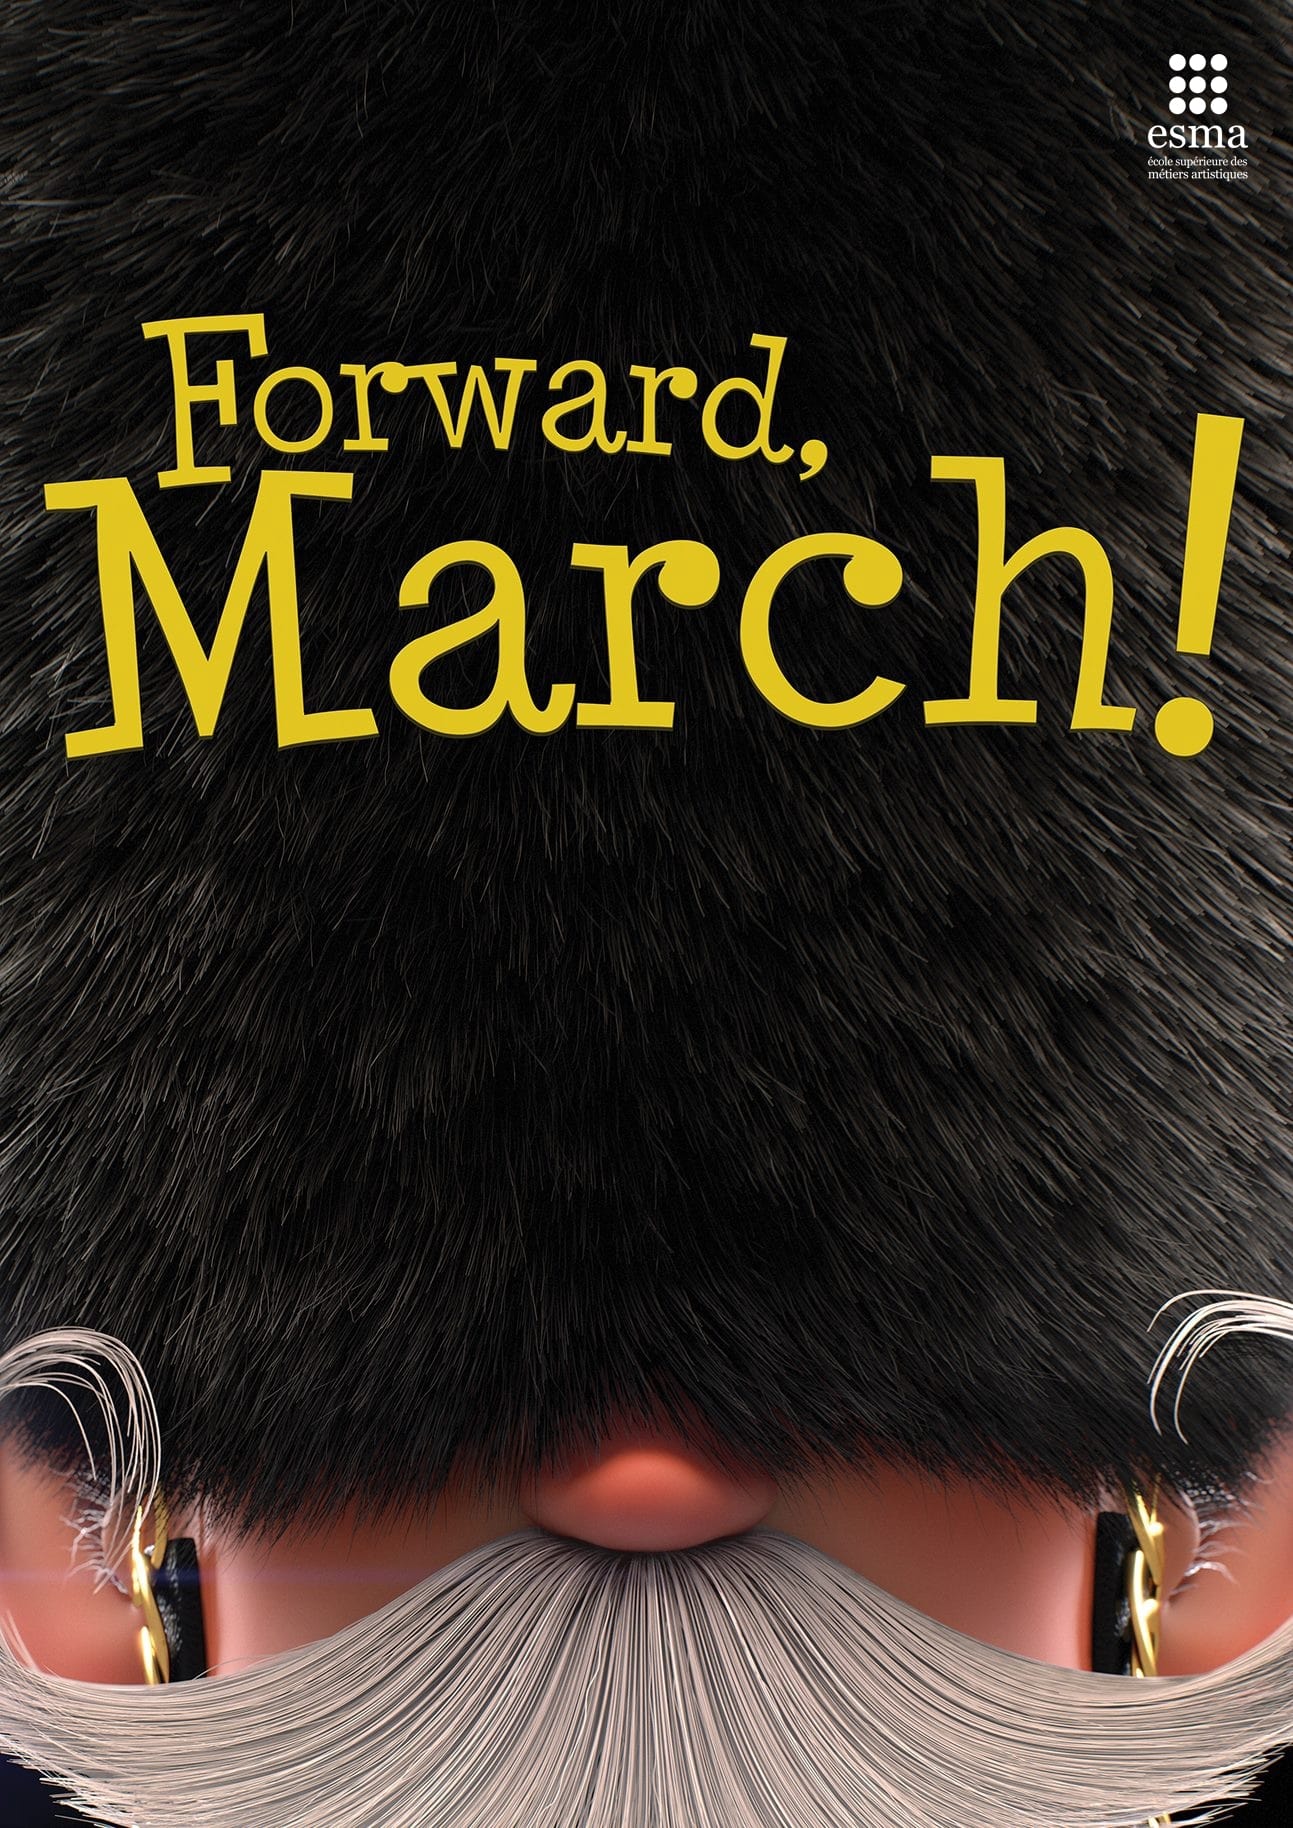 Forward, March!